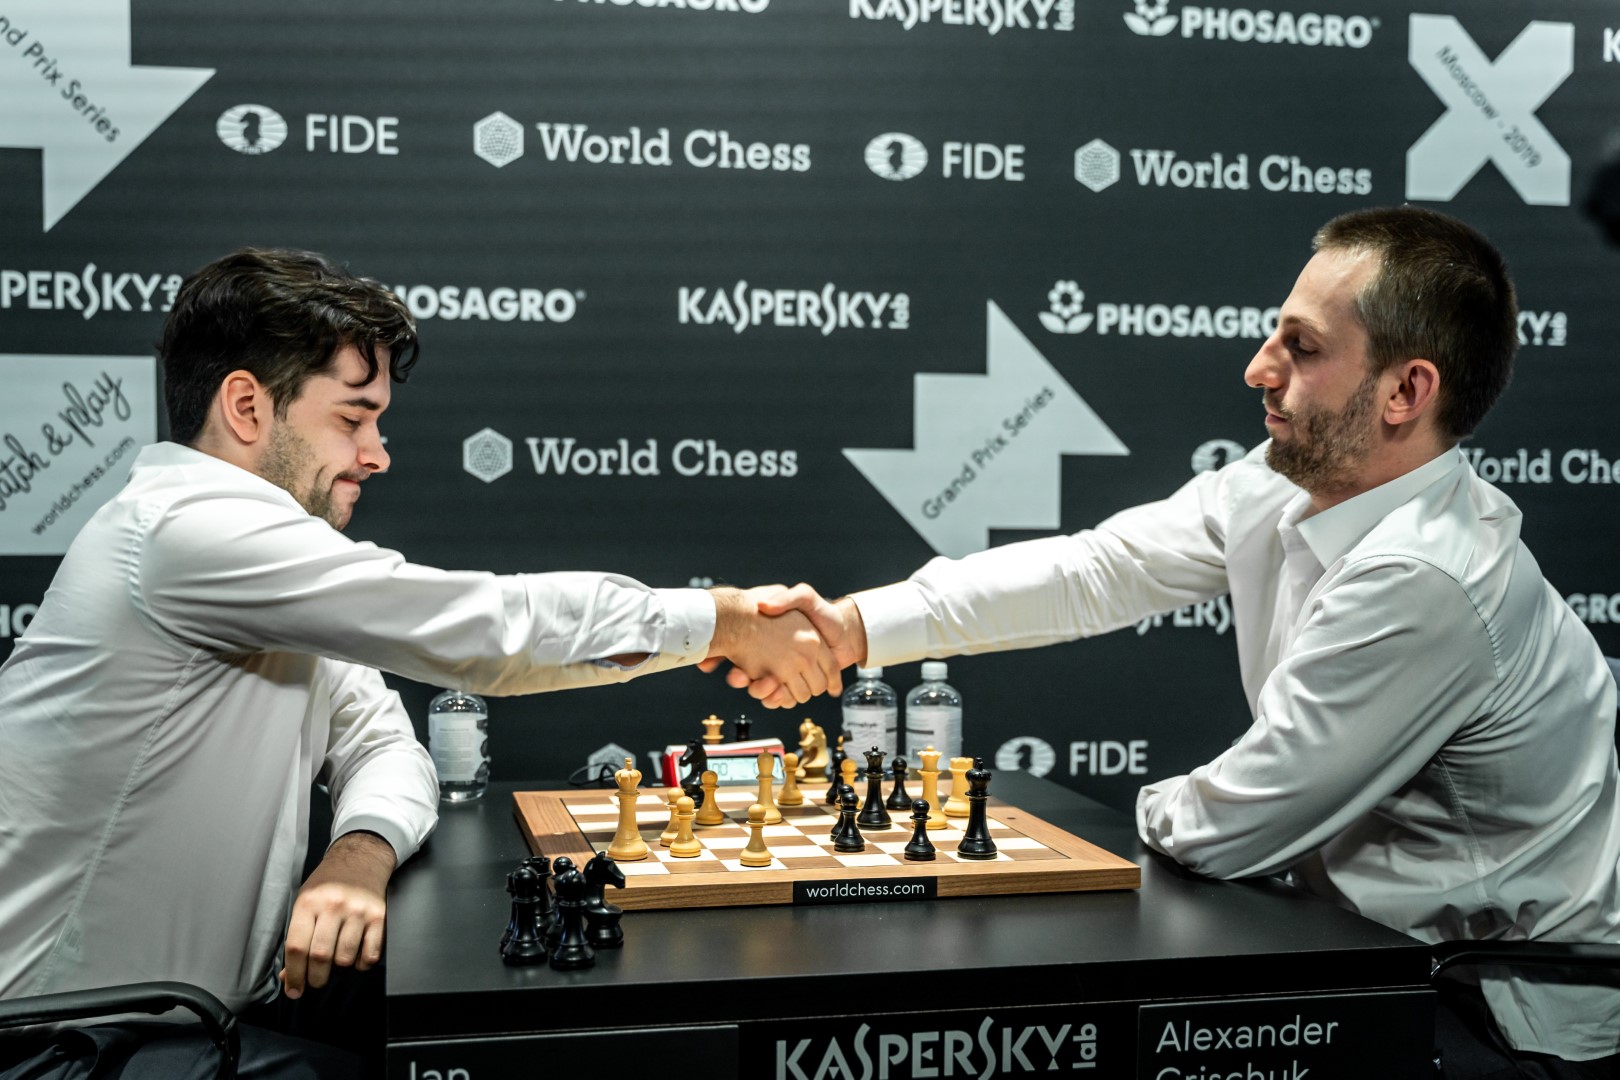 2018 Speed Chess Championship: Nepomniachtchi Vs Grischuk 